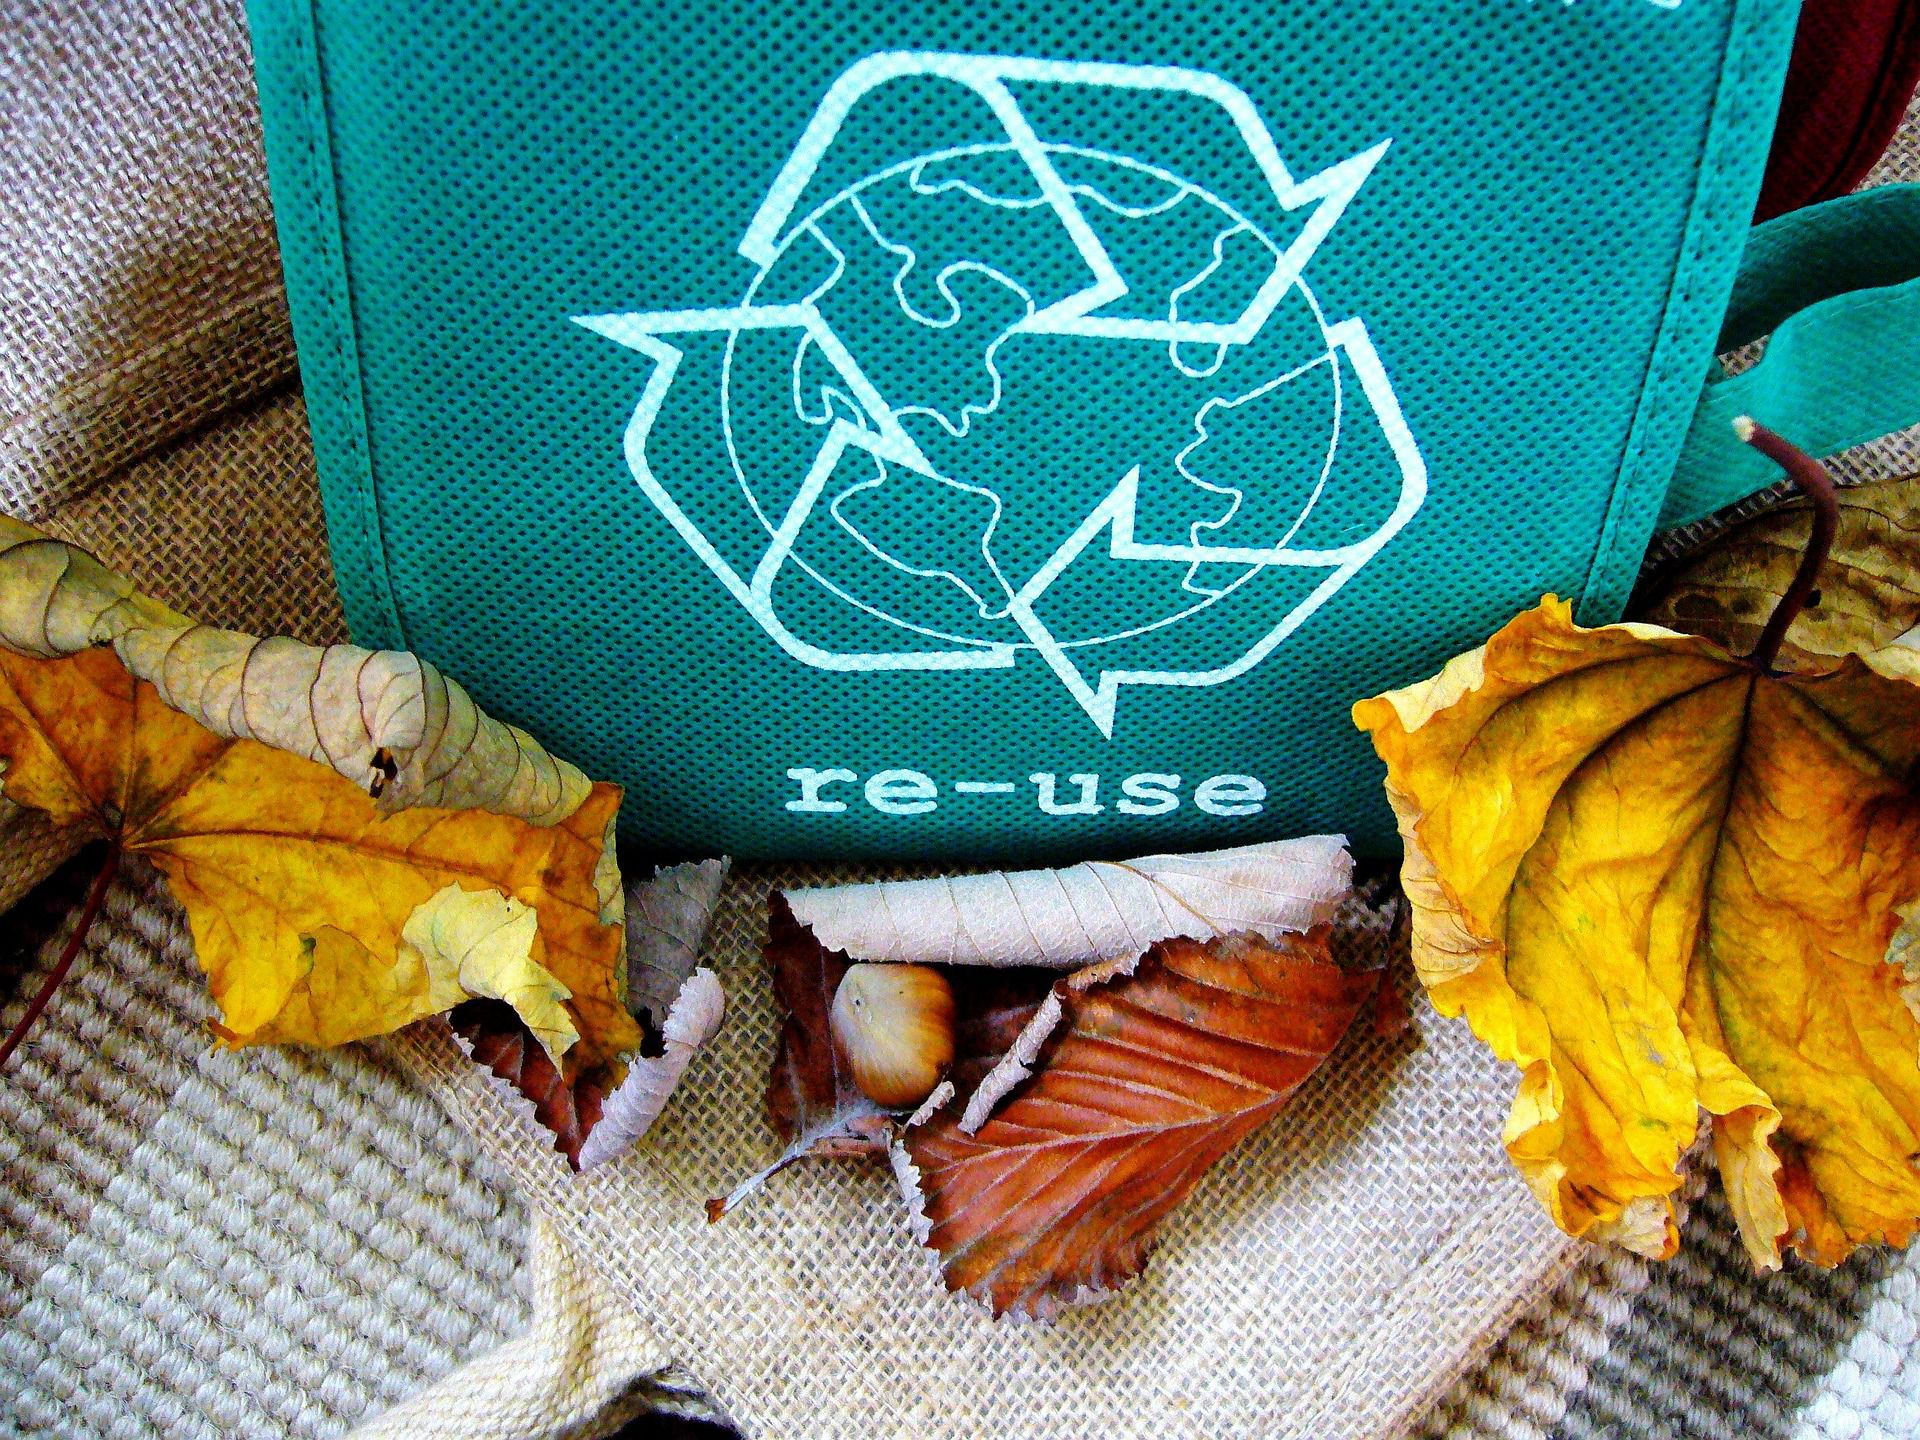 Targi Zero Waste, czyli jak zmniejszyć ilość odpadów w życiu codziennym